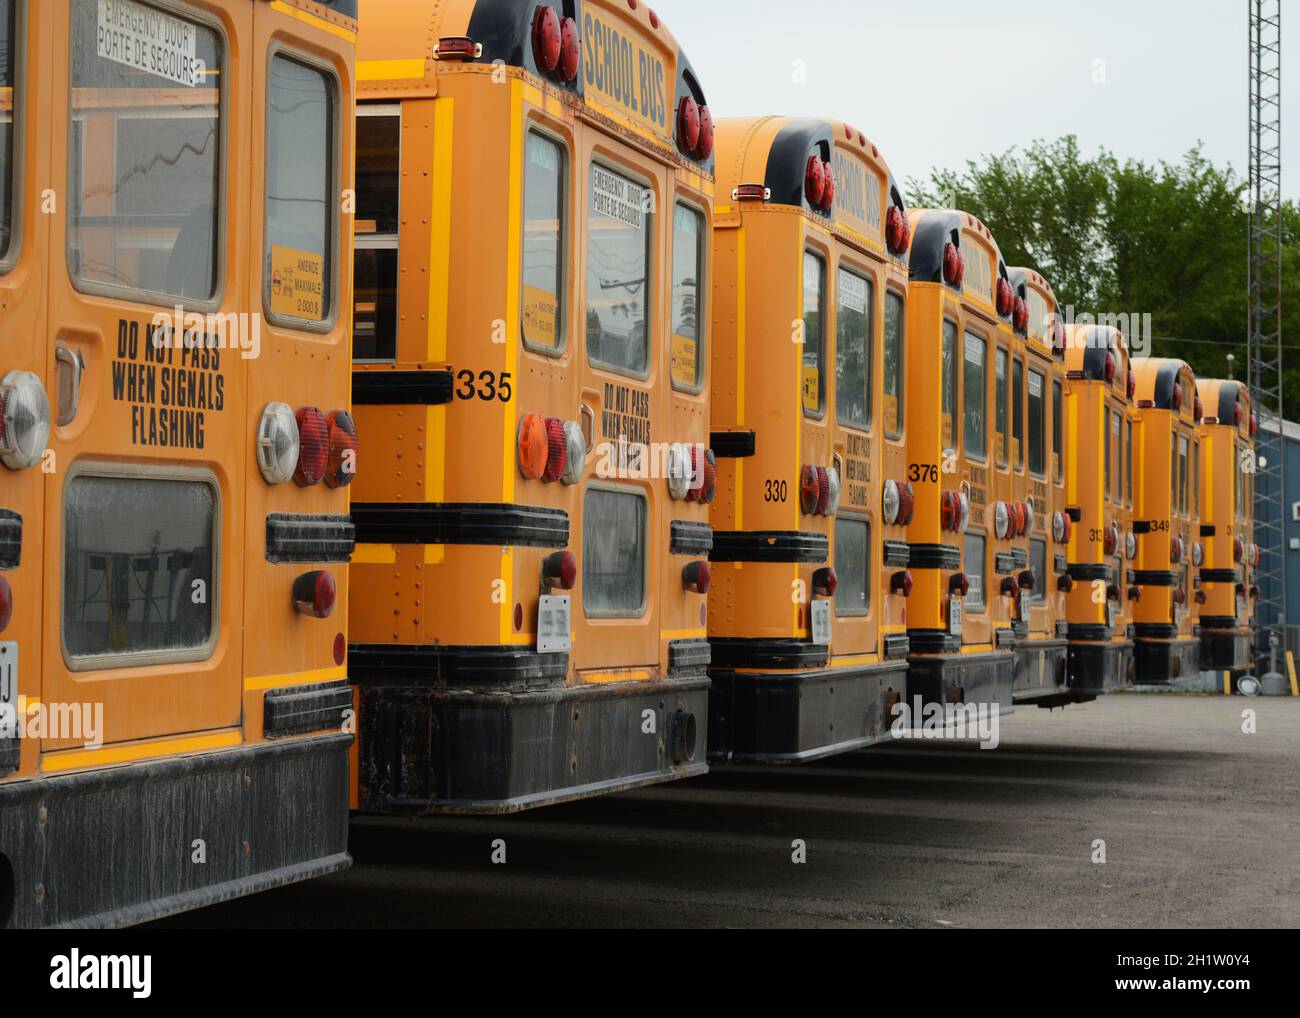 Viele Schulbusse parkten auf dem Parkplatz, während sie nicht auf der Straße benutzt wurden. Stockfoto